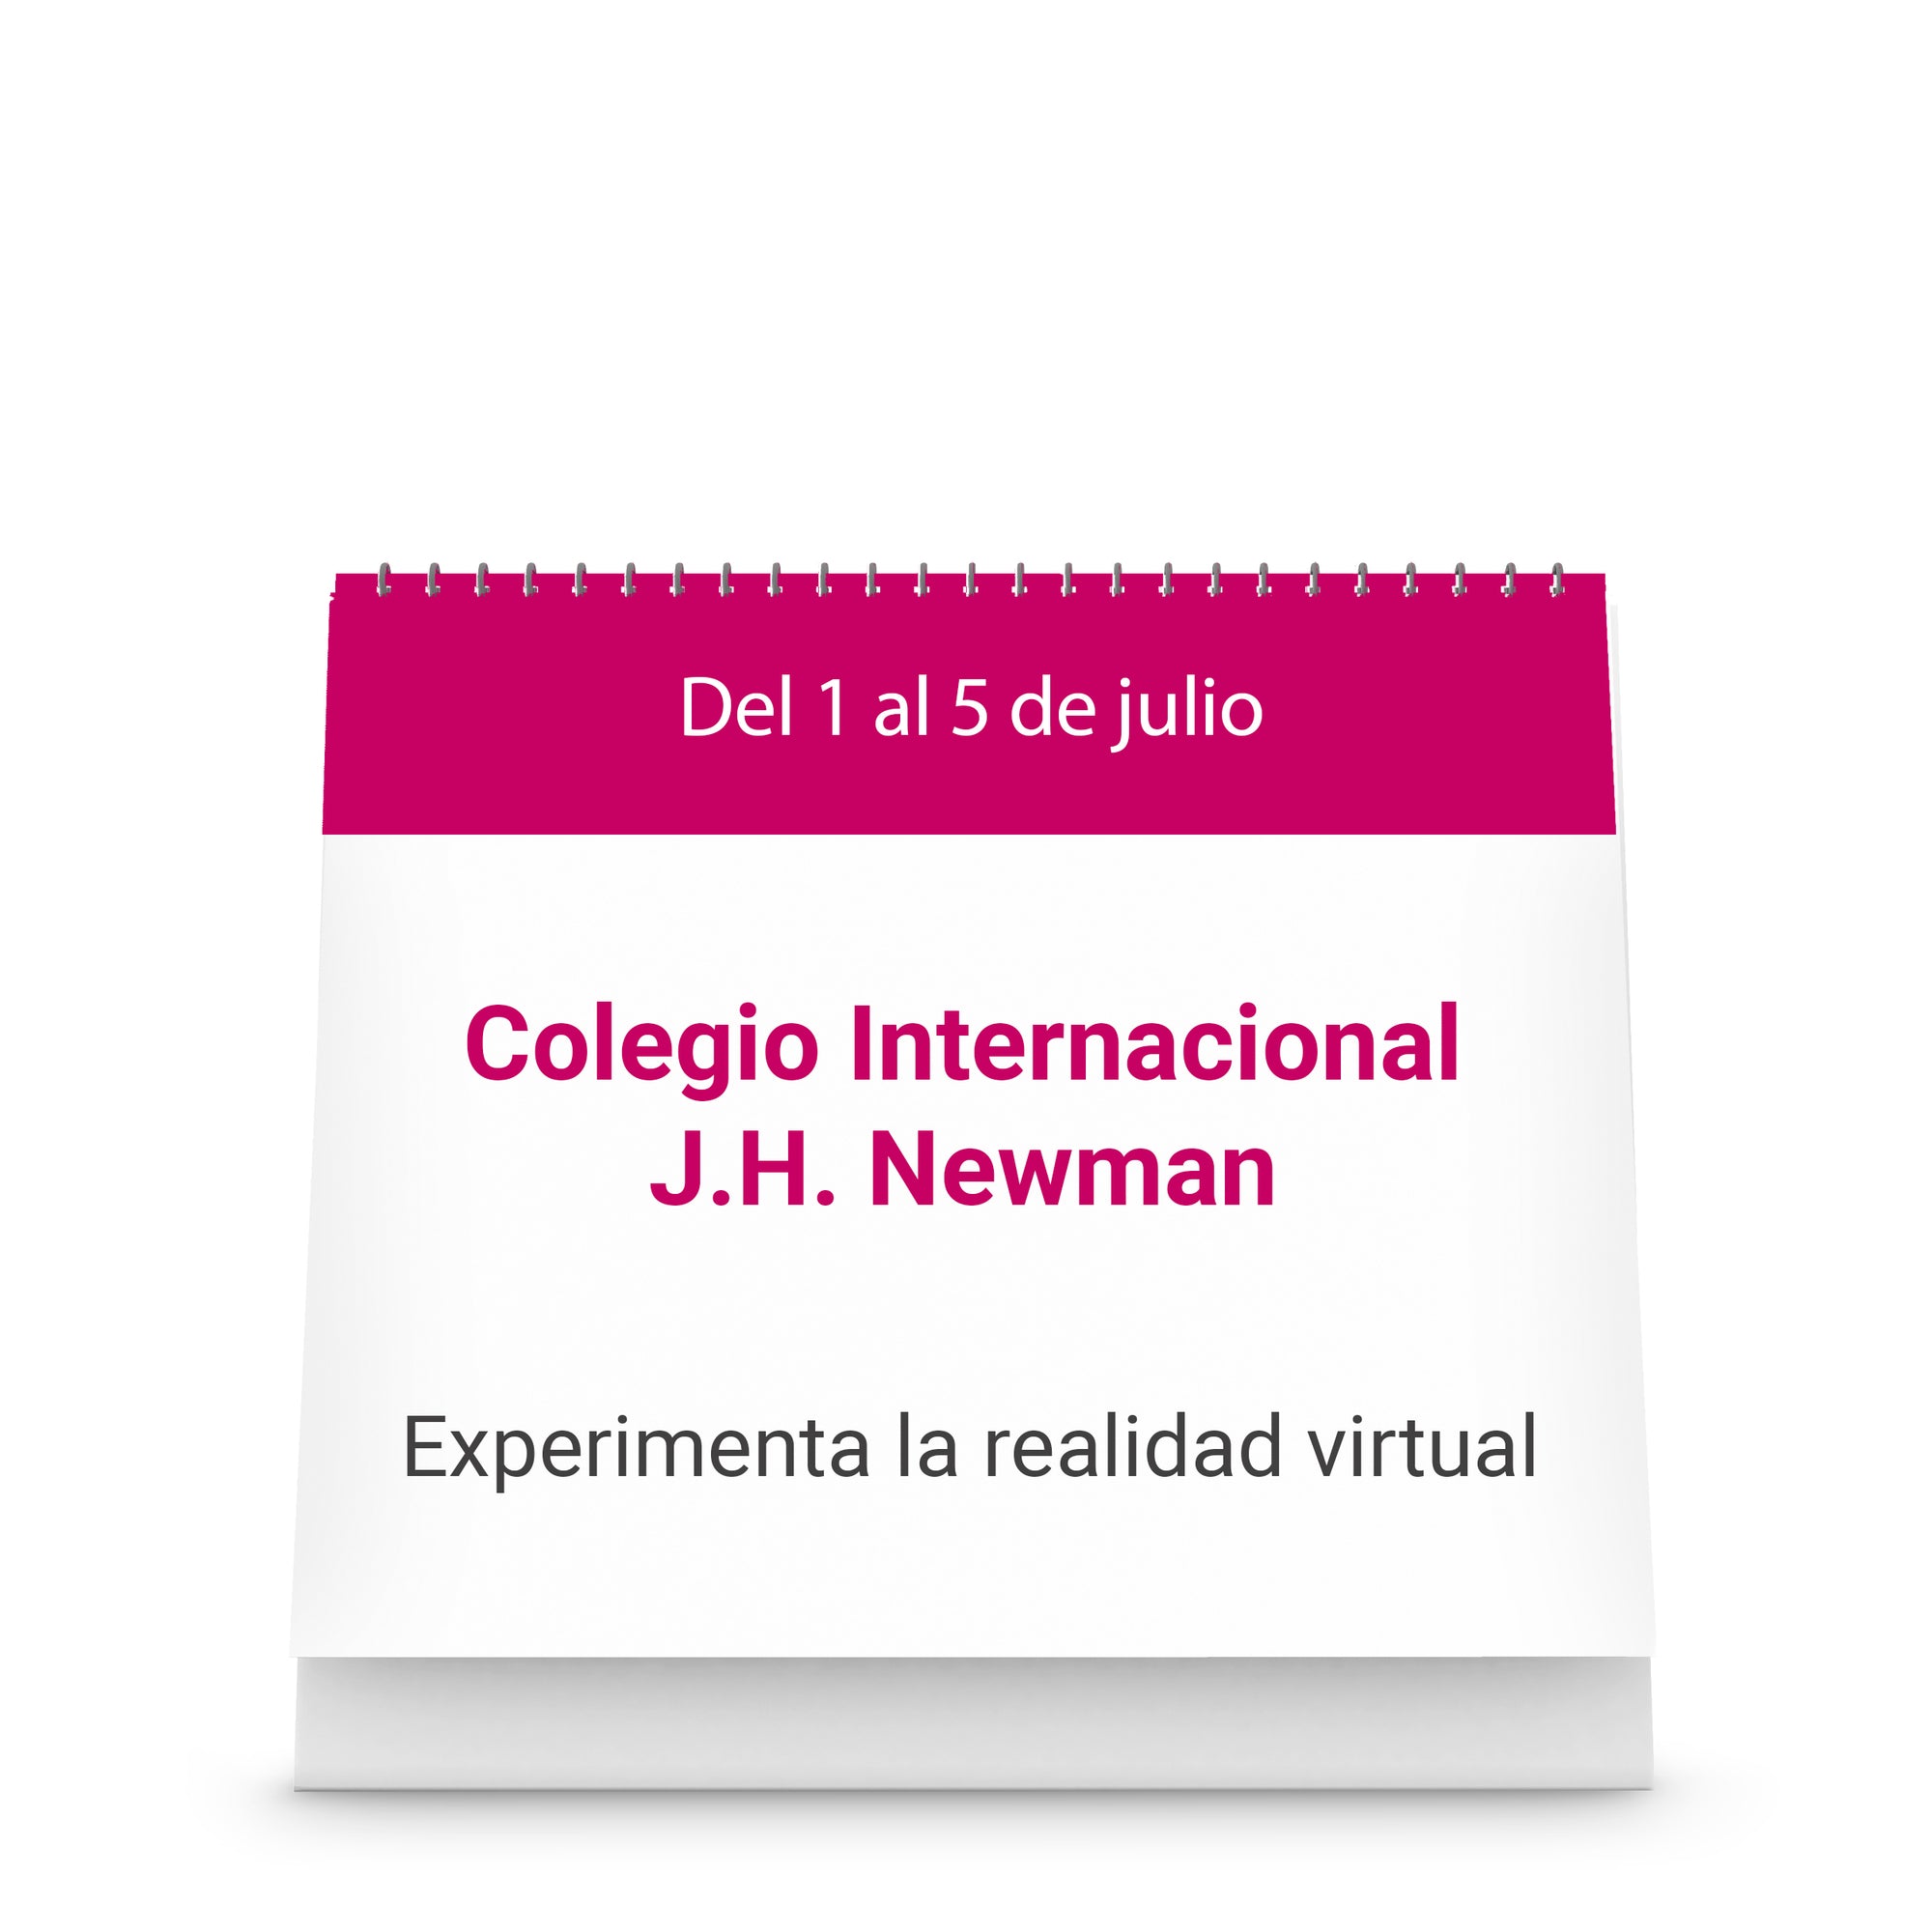 Colegio J.H. Newman - Experimenta la realidad virtual